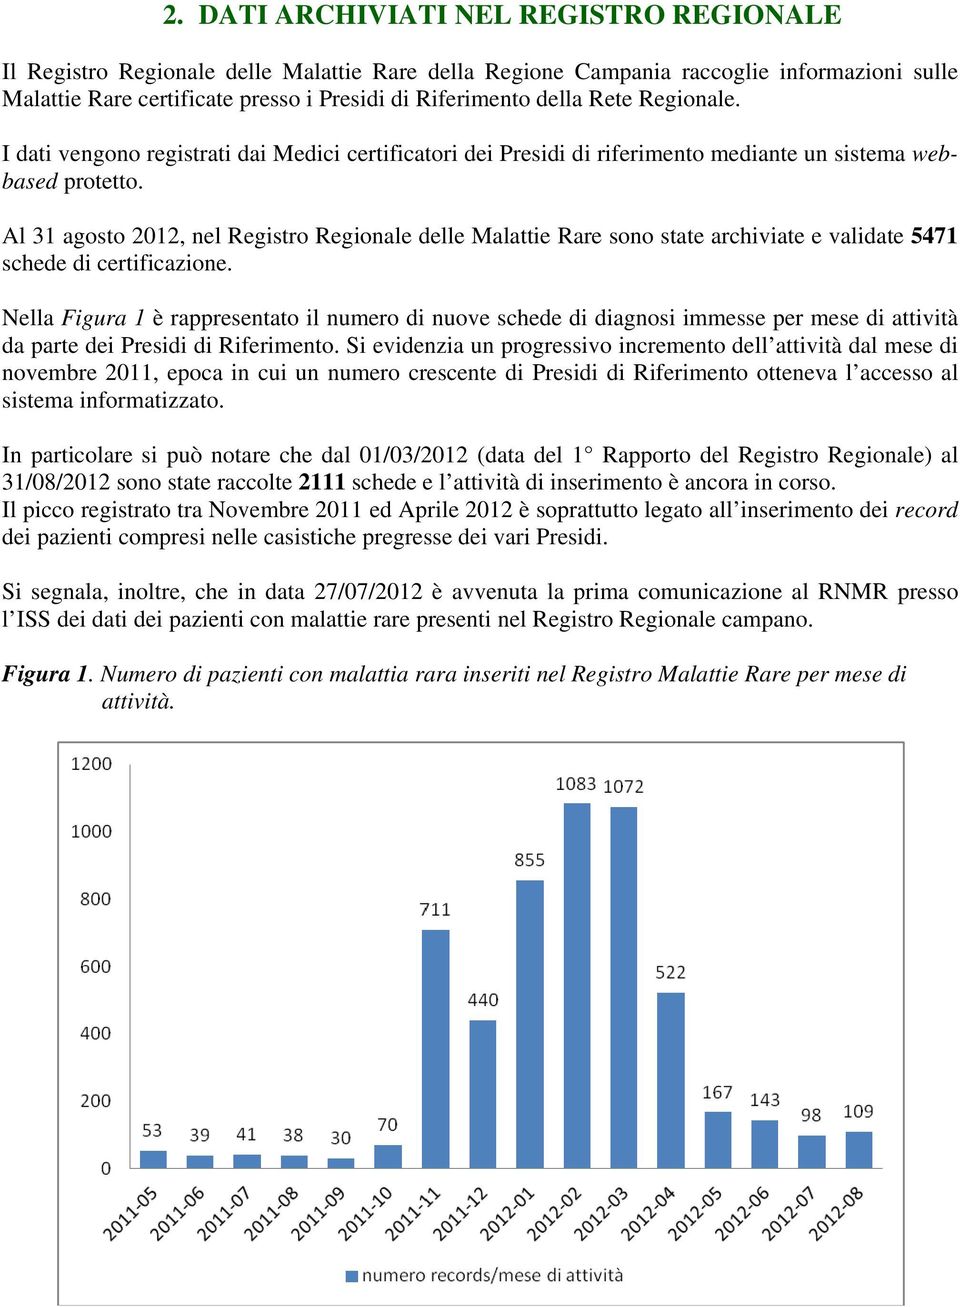 Al 31 agosto 2012, nel Registro Regionale delle Malattie Rare sono state archiviate e validate 5471 schede di certificazione.